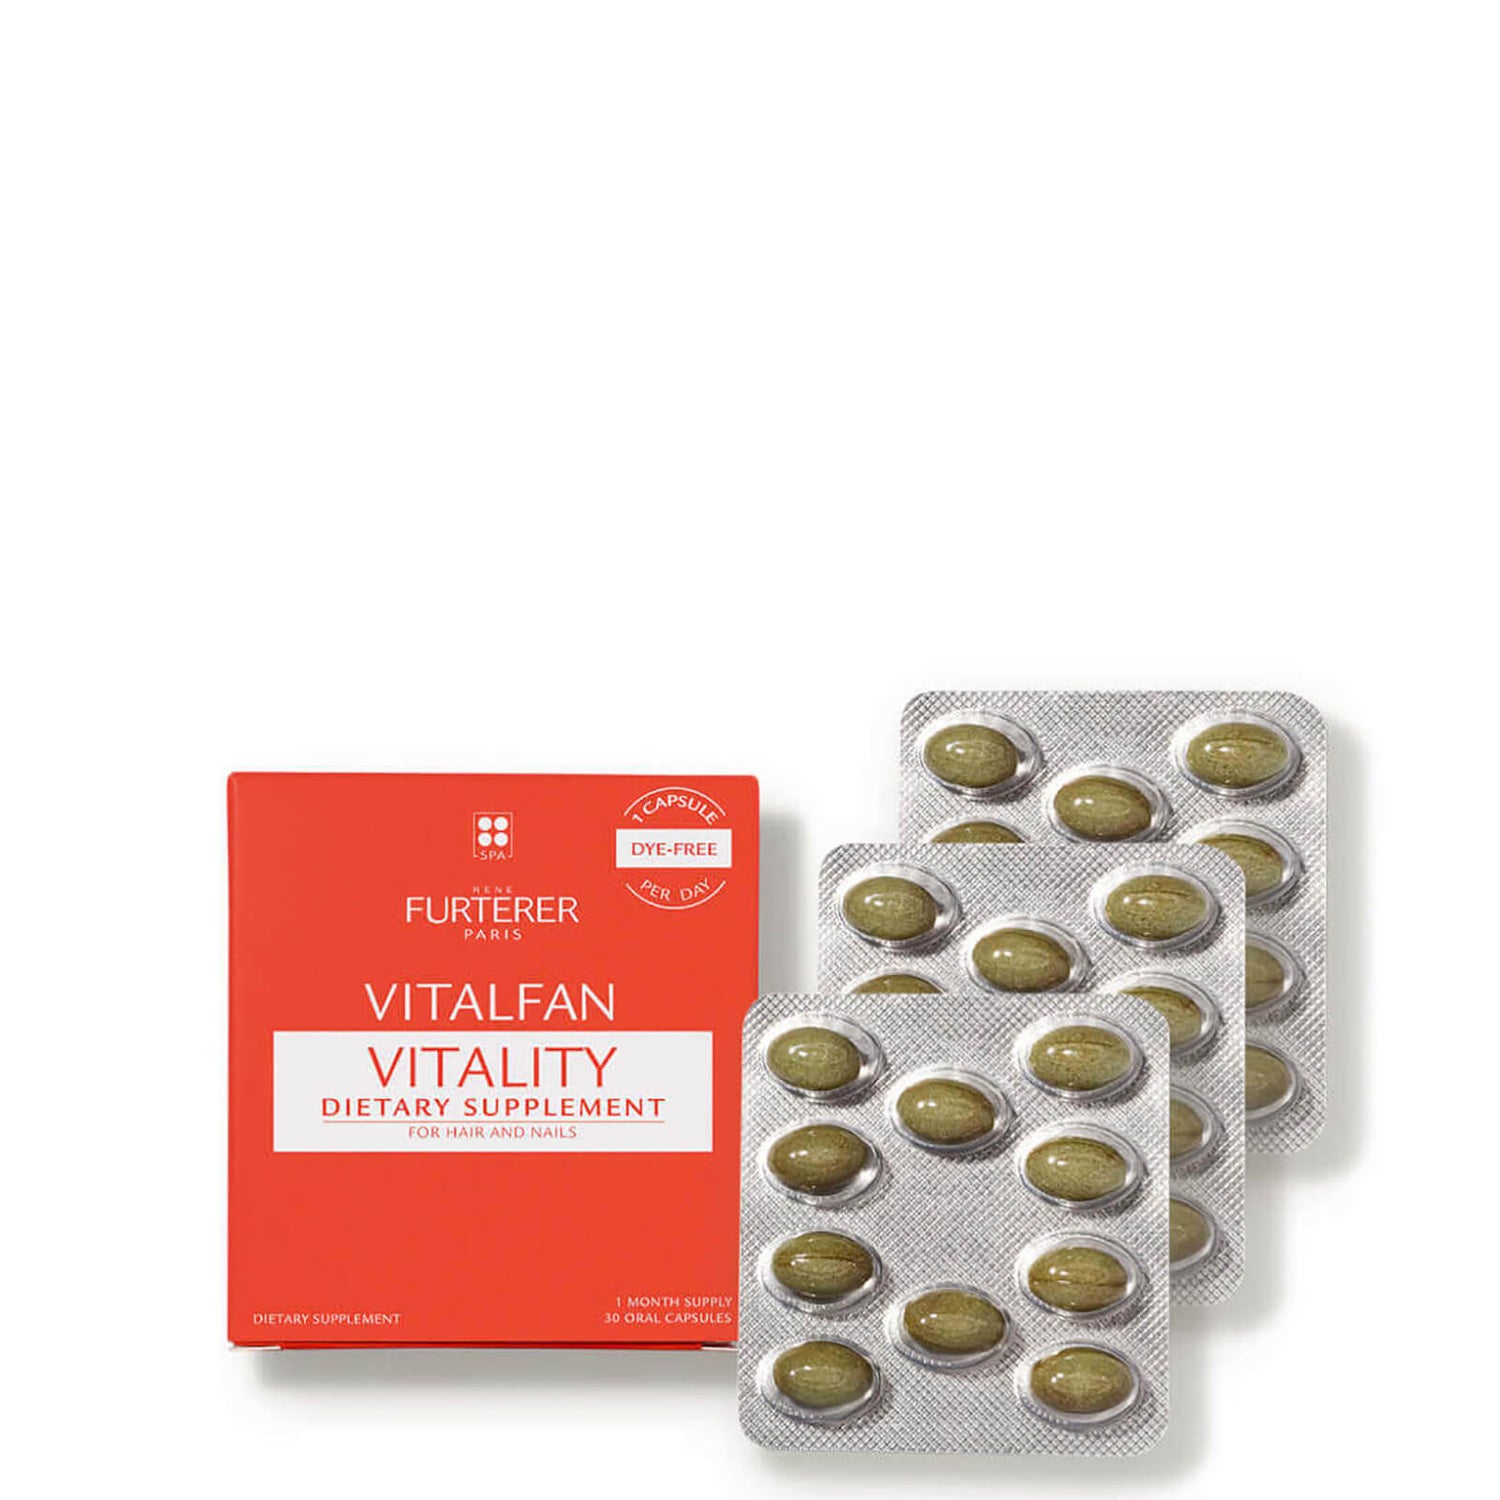 René Furterer VITALFAN Vitality Dietary Supplement 30 Capsules